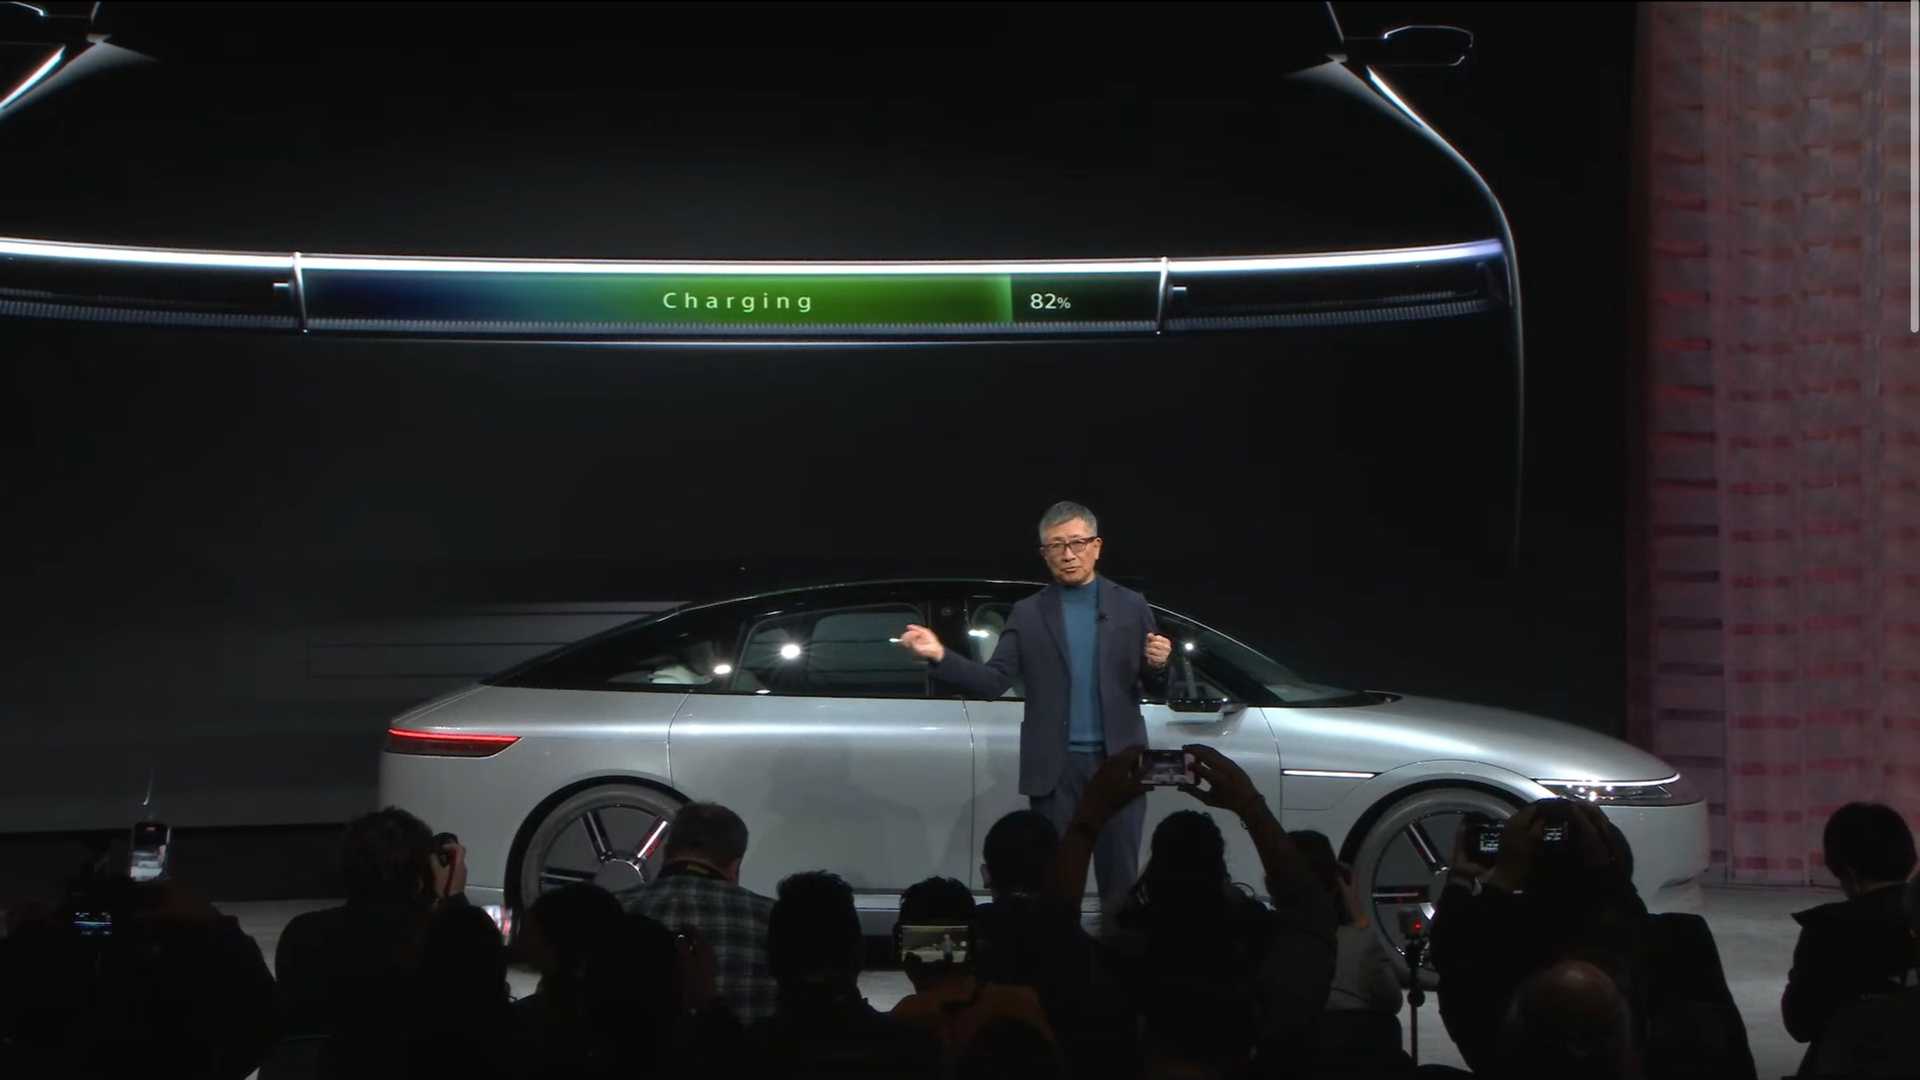 سوني تطلق علامتها التجارية الجديدة للسيارات رسمياً بالتعاون مع هوندا 8